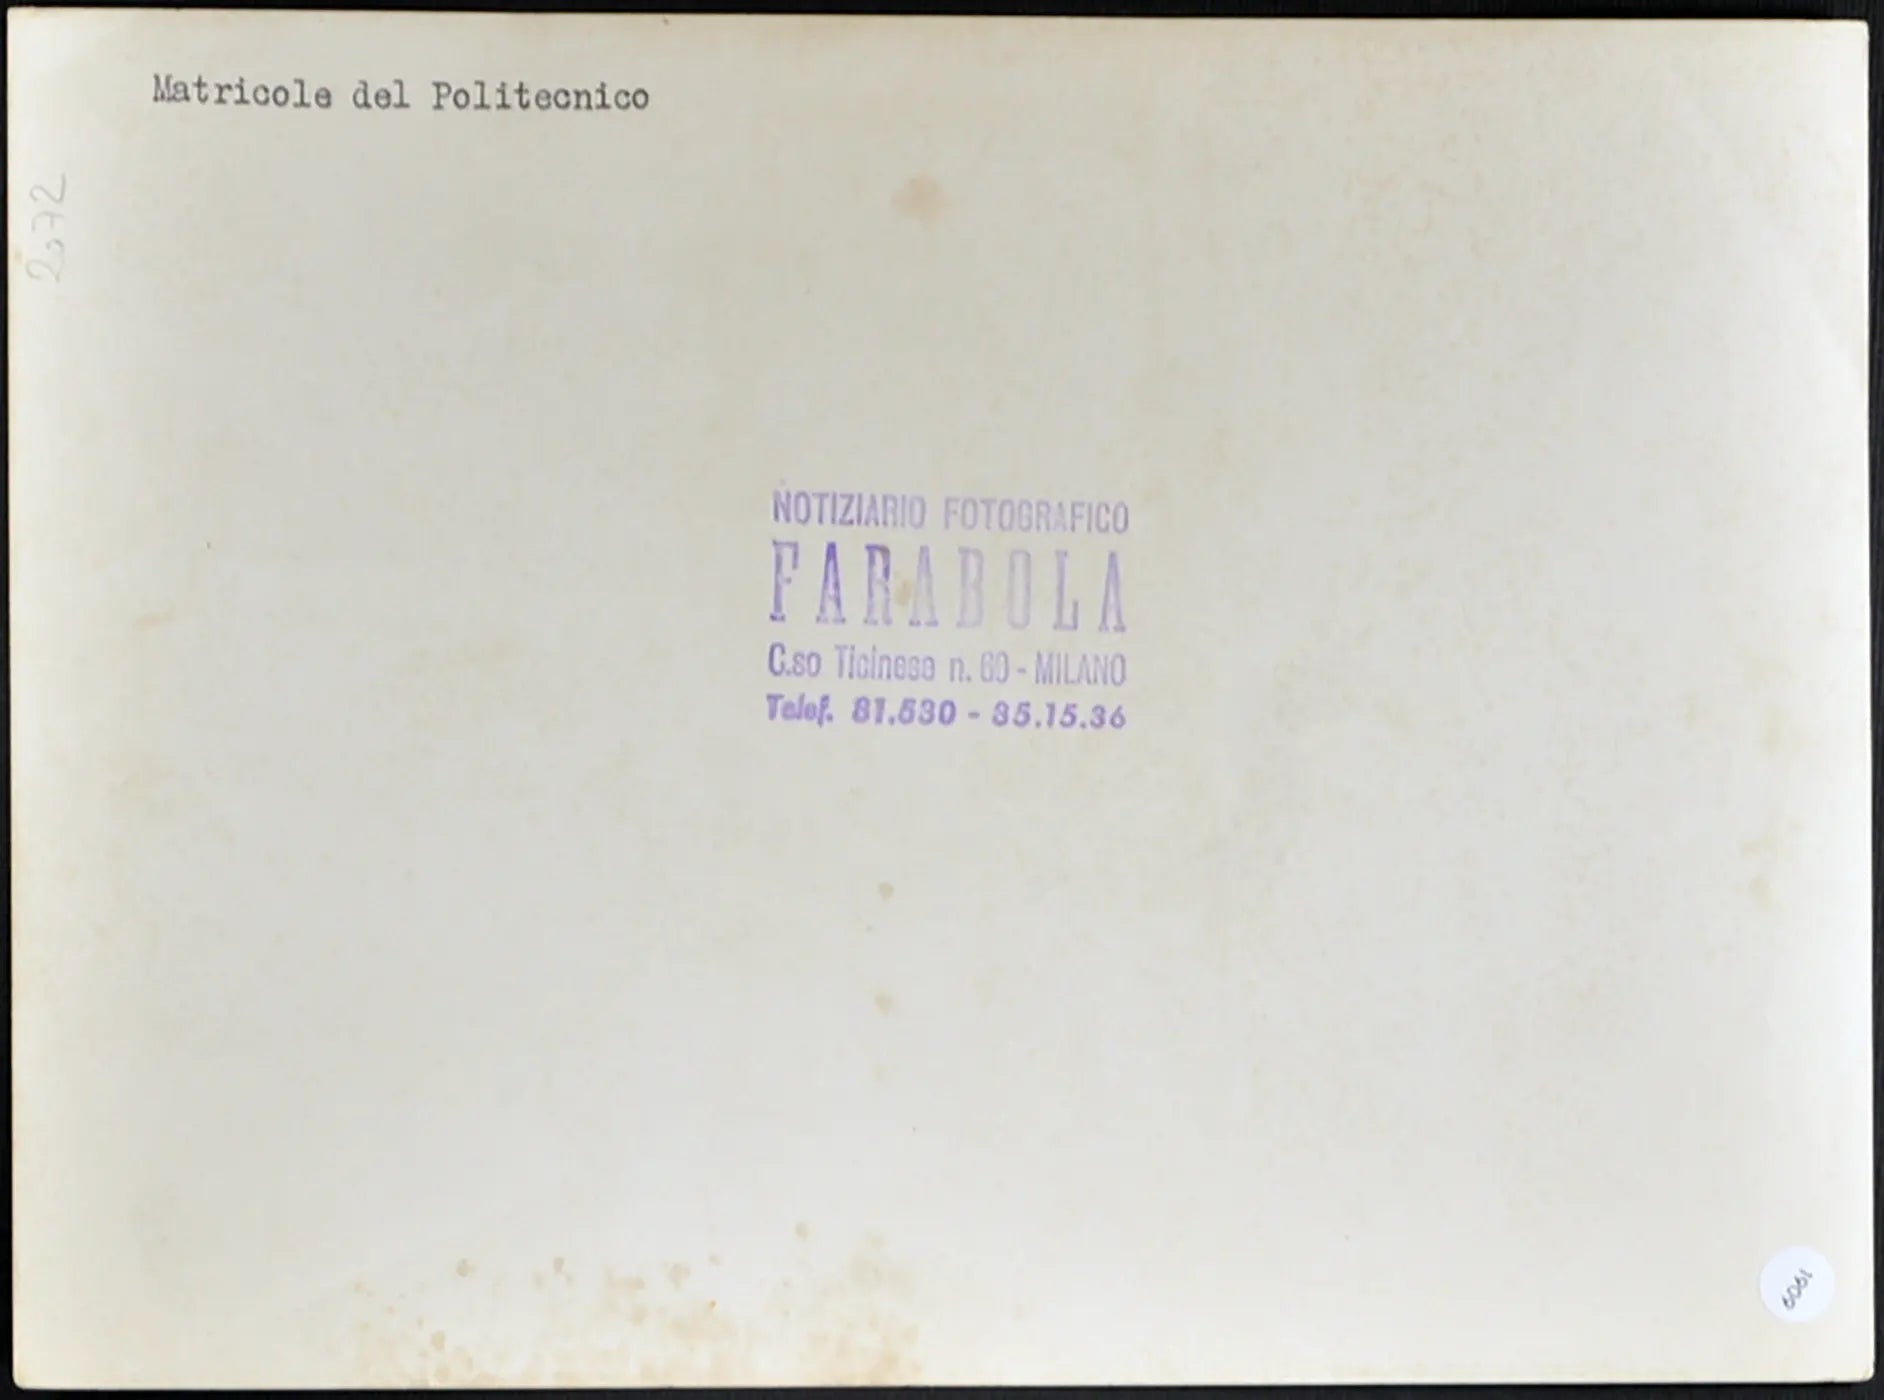 Matricole del Politecnico anni 60 Ft 1909 - Stampa 24x18 cm - Farabola Stampa ai sali d'argento